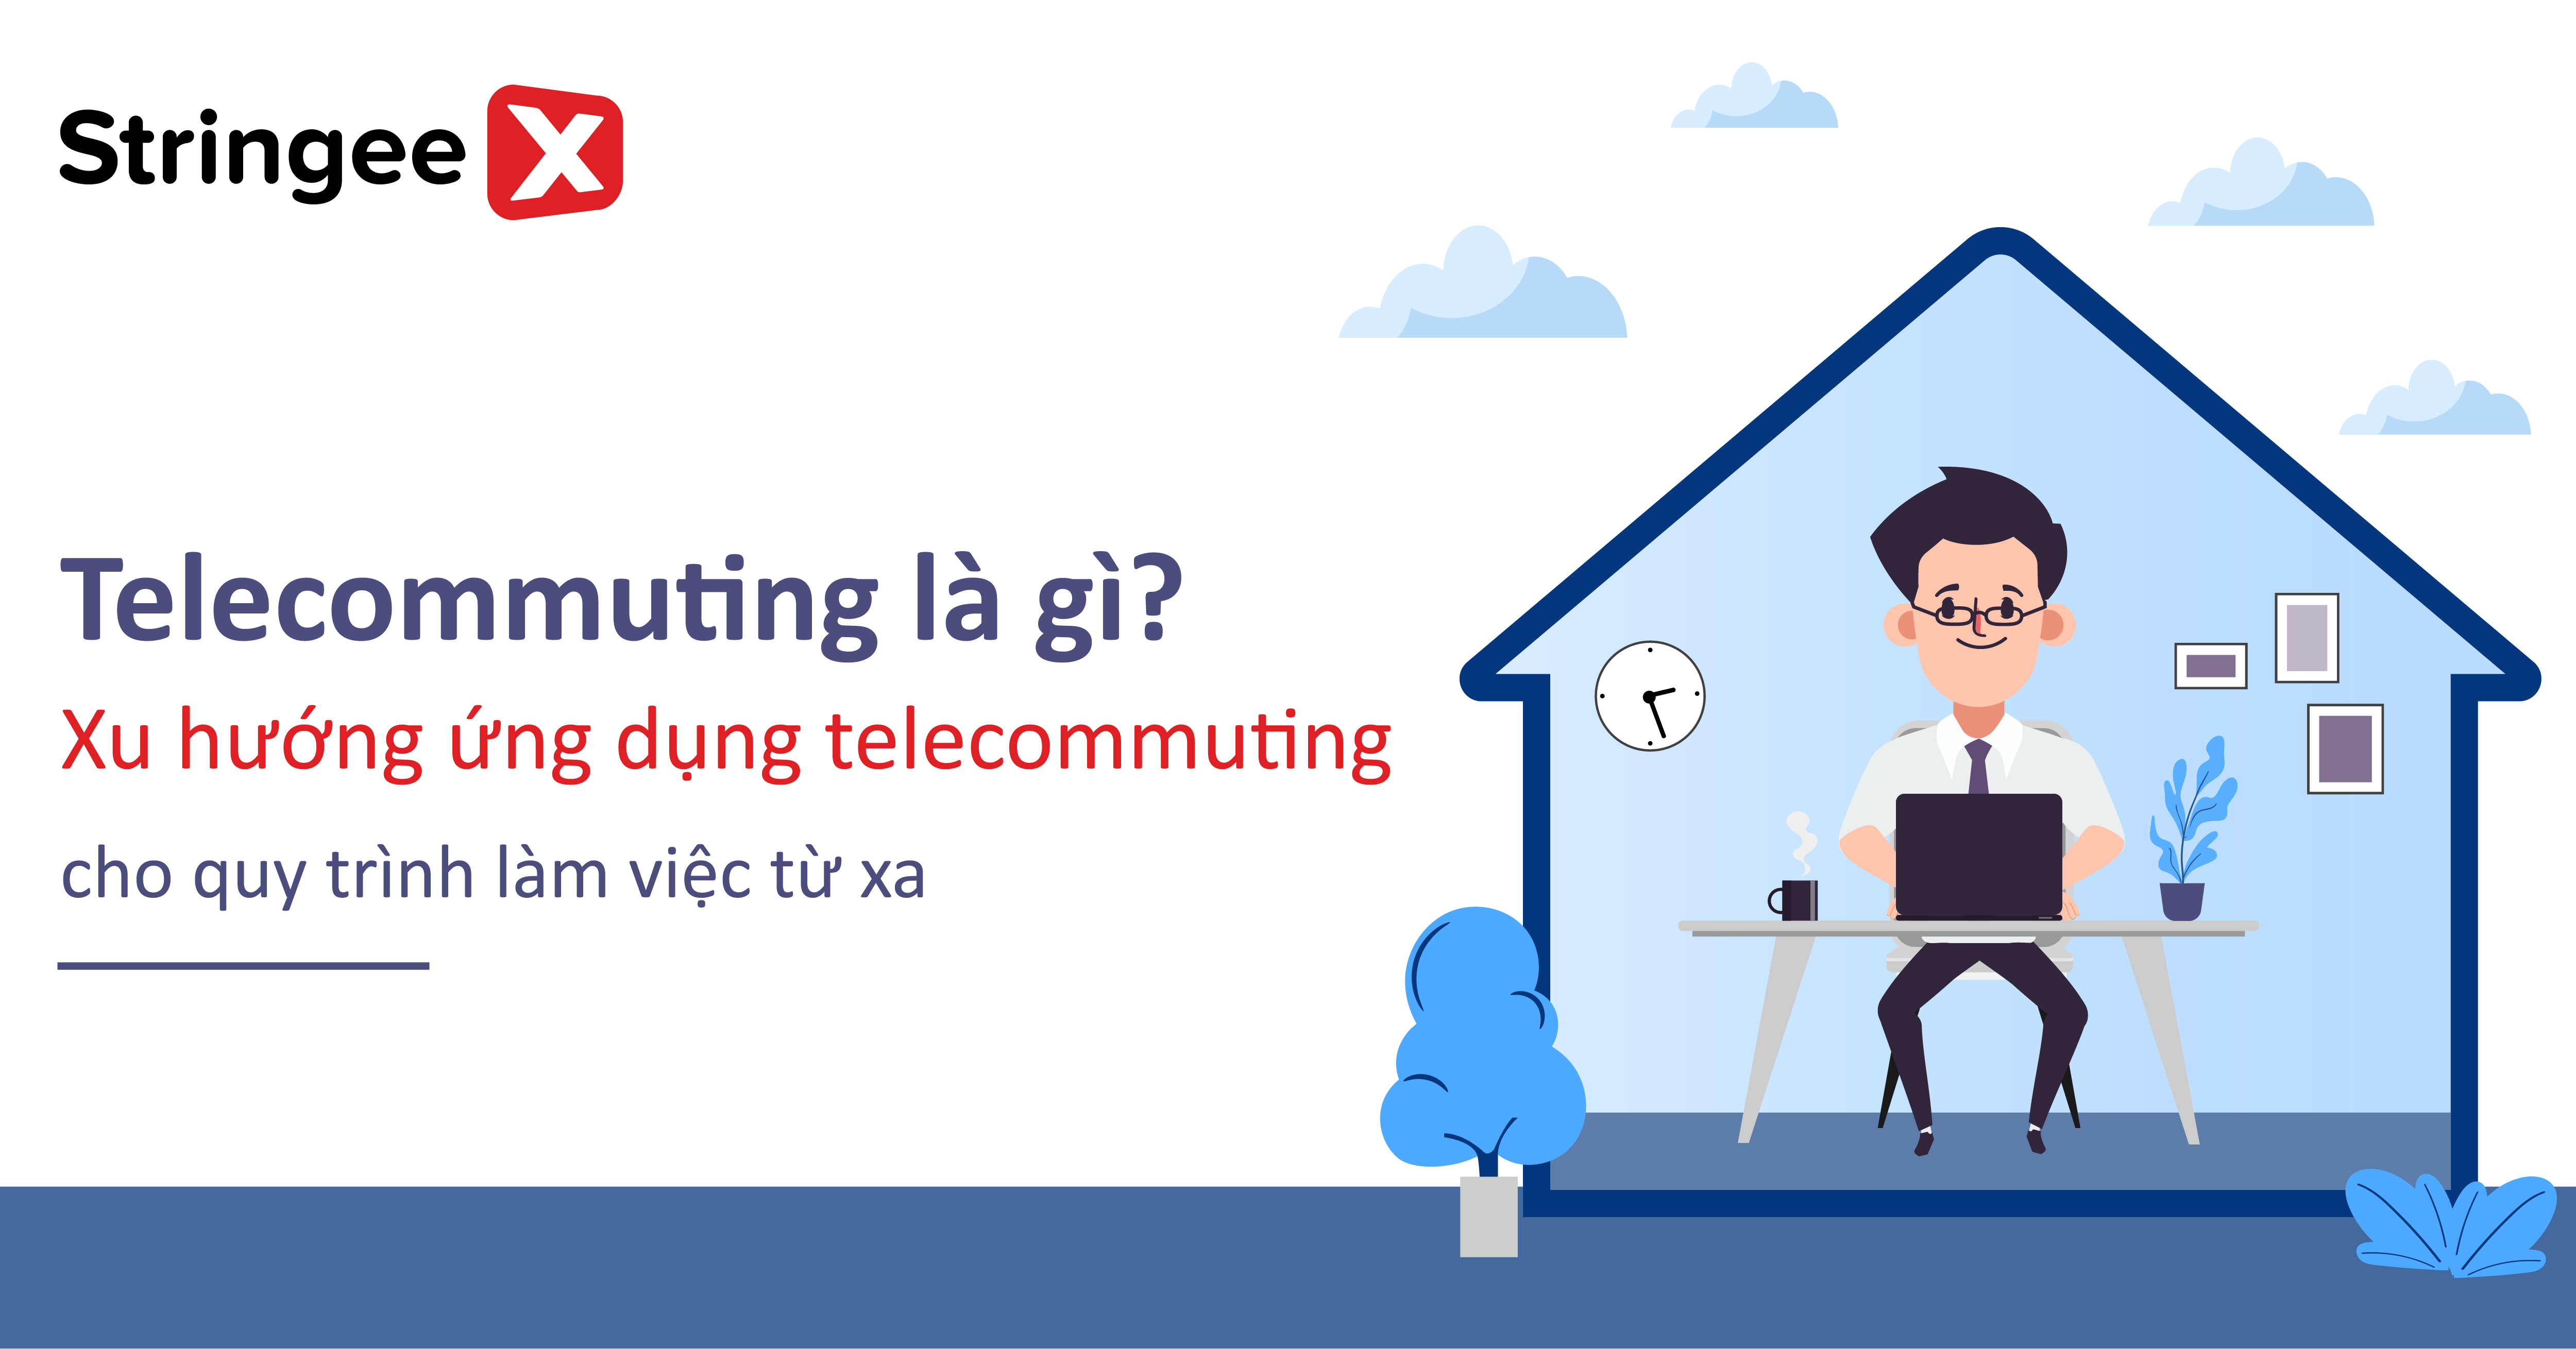 Telecommuting là gì? Xu hướng ứng dụng telecommuting cho quy trình làm việc từ xa